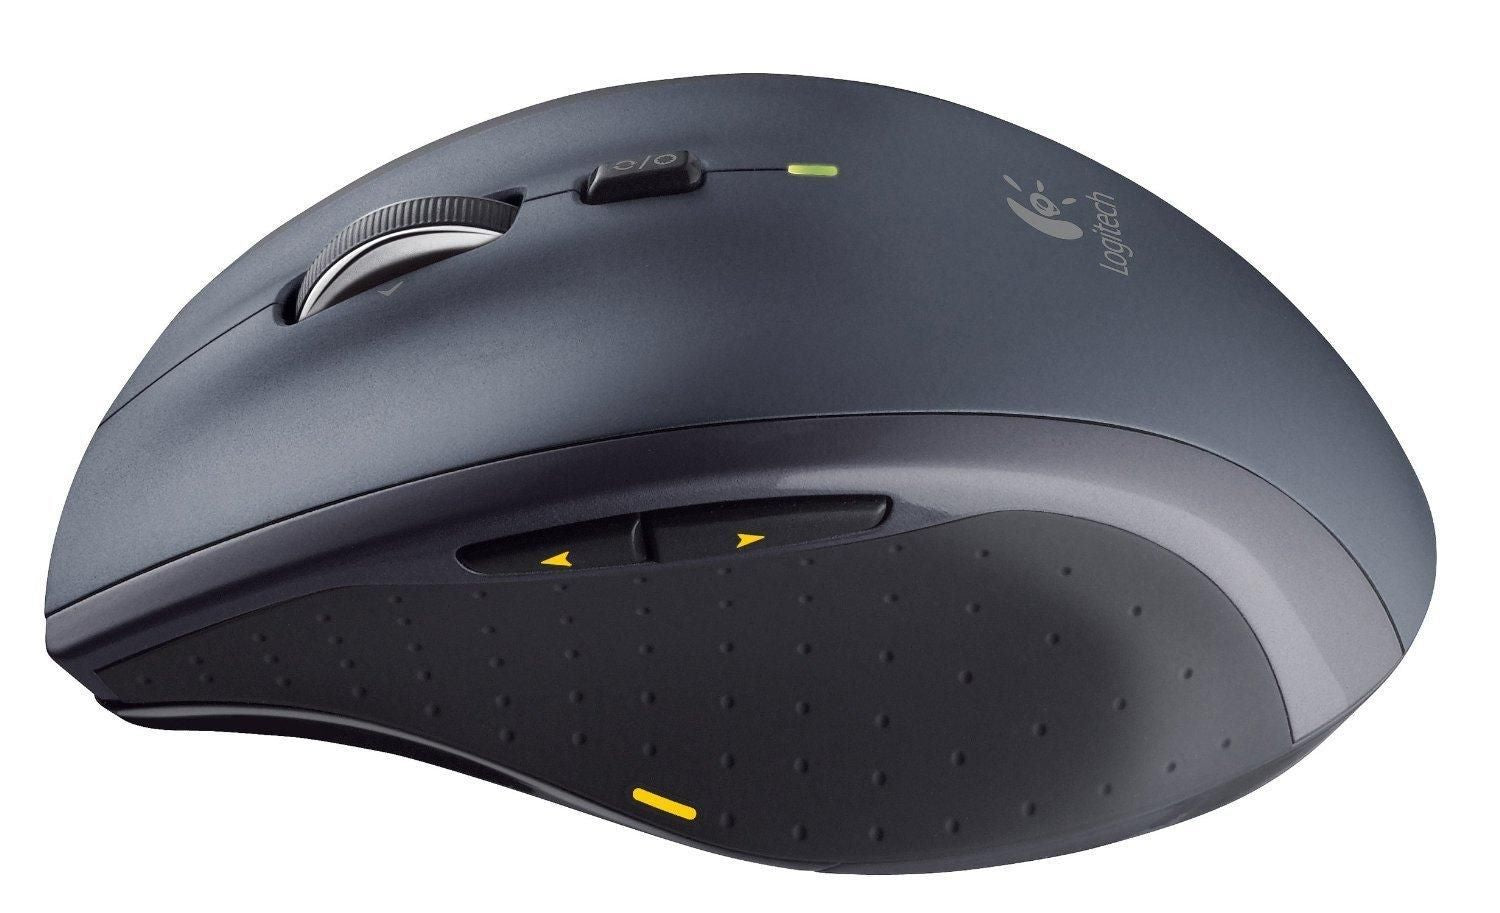 Logitech MK710 Wireless Keyboard and Mouse Combo